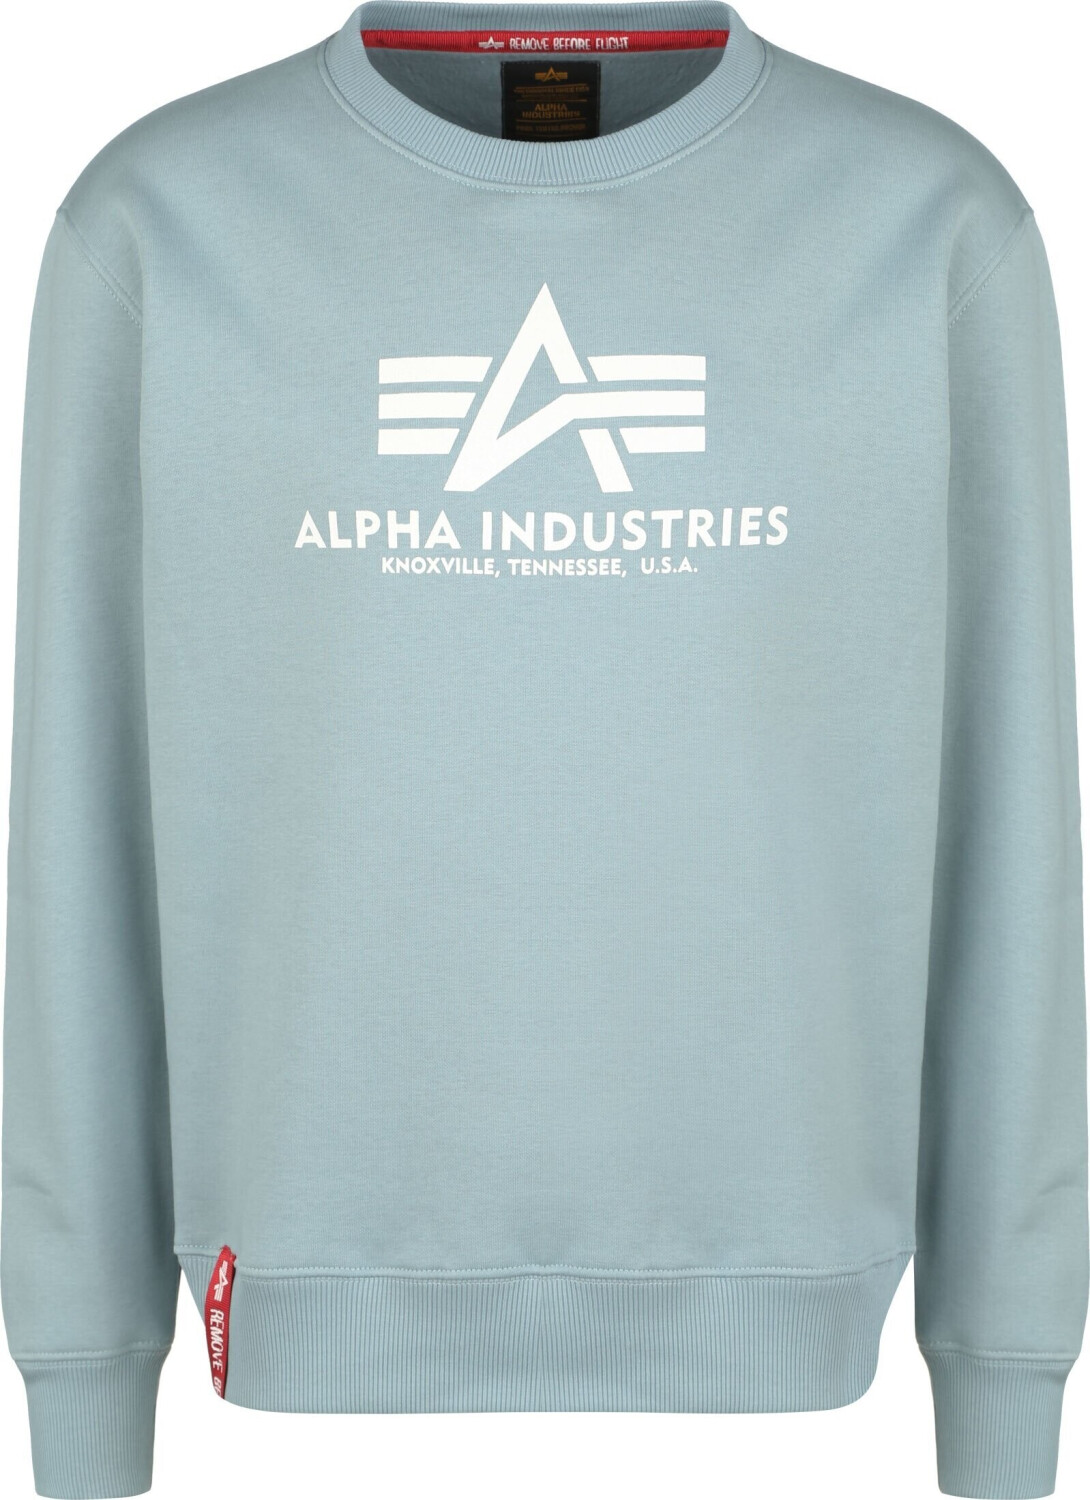 Preisvergleich Basic (178302-134) Industries Alpha ab bei | € 52,90 blue Sweatshirt